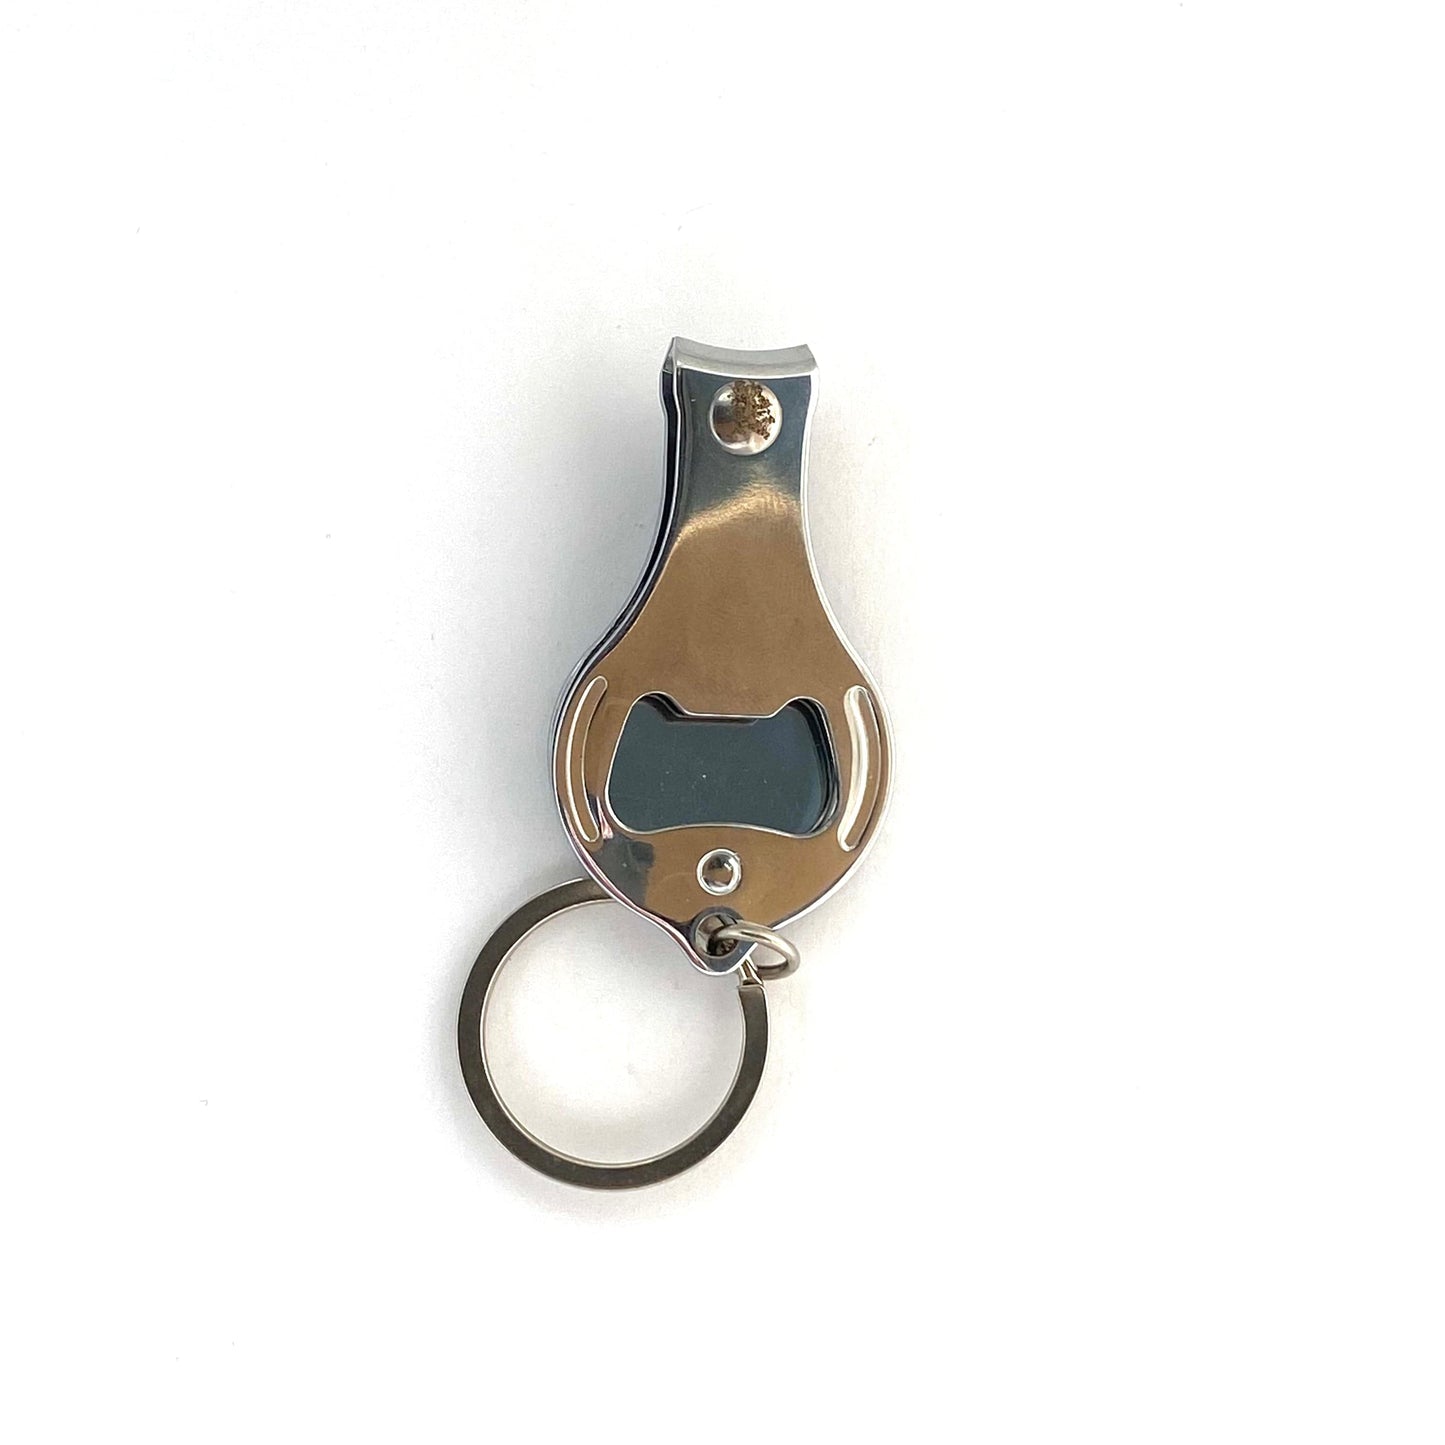 Mazatlan Nail Clippers Travel Souvenir Keychain Key Ring Metal Silver